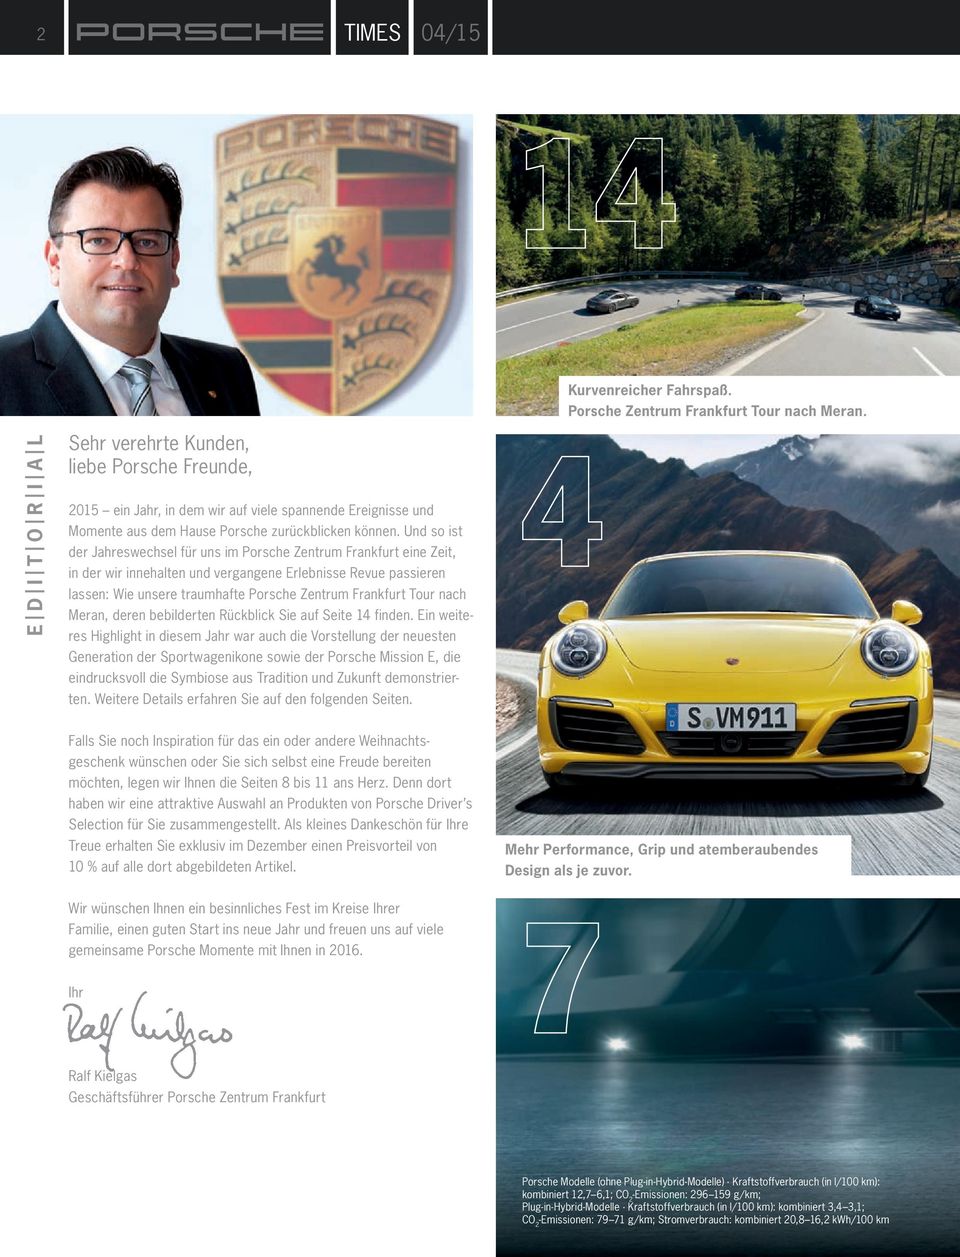 Und so ist der Jahreswechsel für uns im Porsche Zentrum Frankfurt eine Zeit, in der wir innehalten und vergangene Erlebnisse Revue passieren lassen: Wie unsere traumhafte Porsche Zentrum Frankfurt